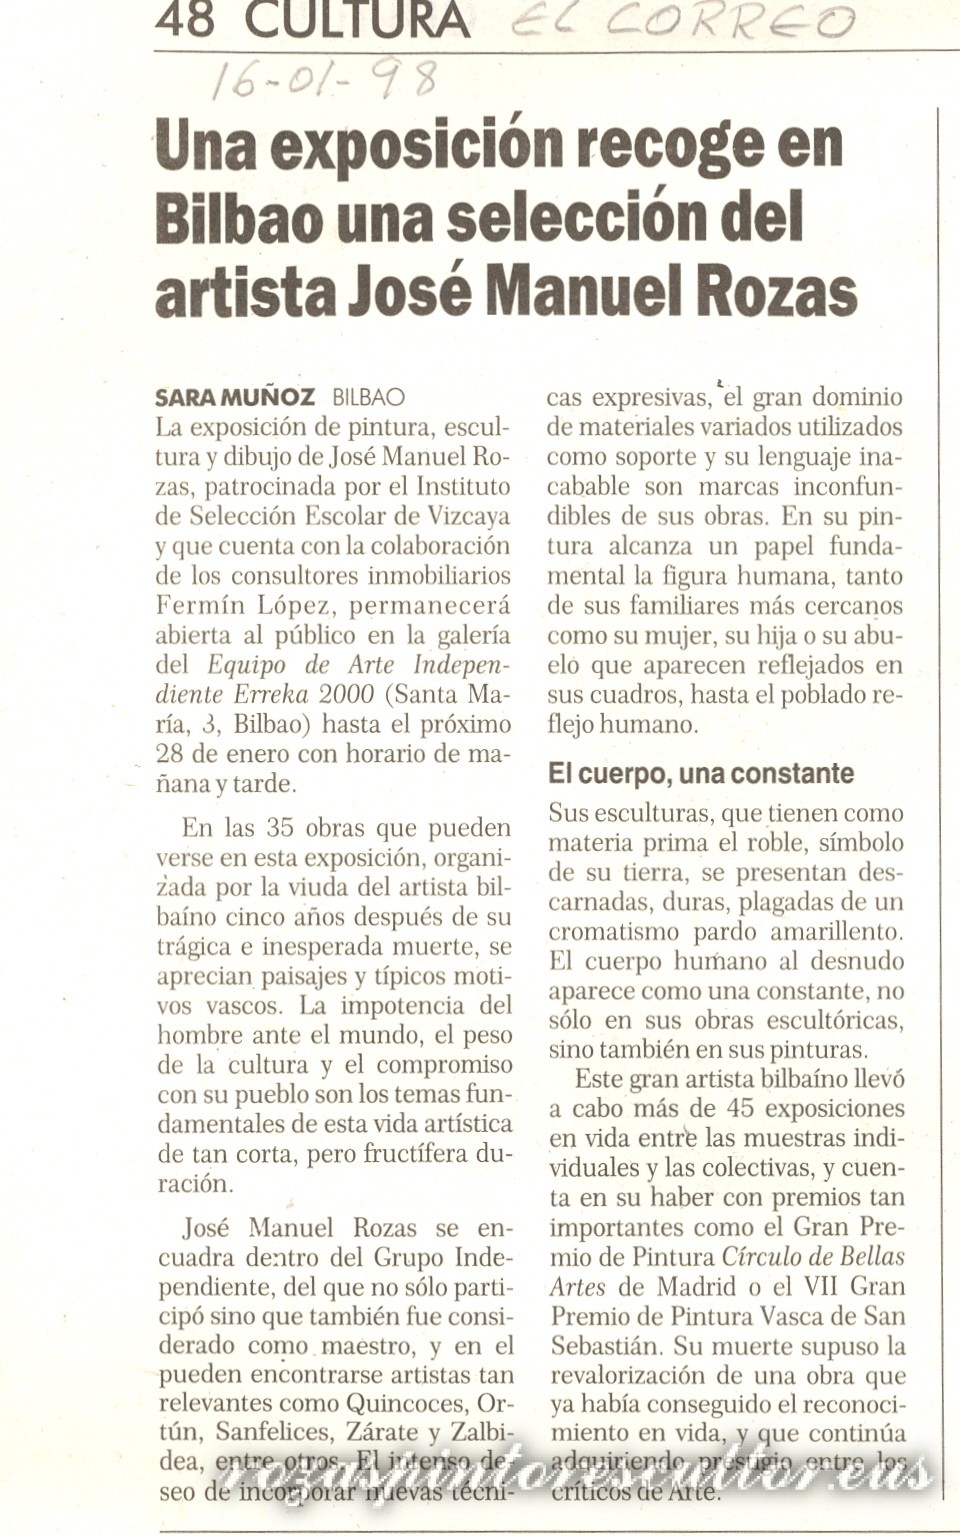 1998 El Correo – Jose Manuel Rozasen aukeraketa – Sara Muñoz